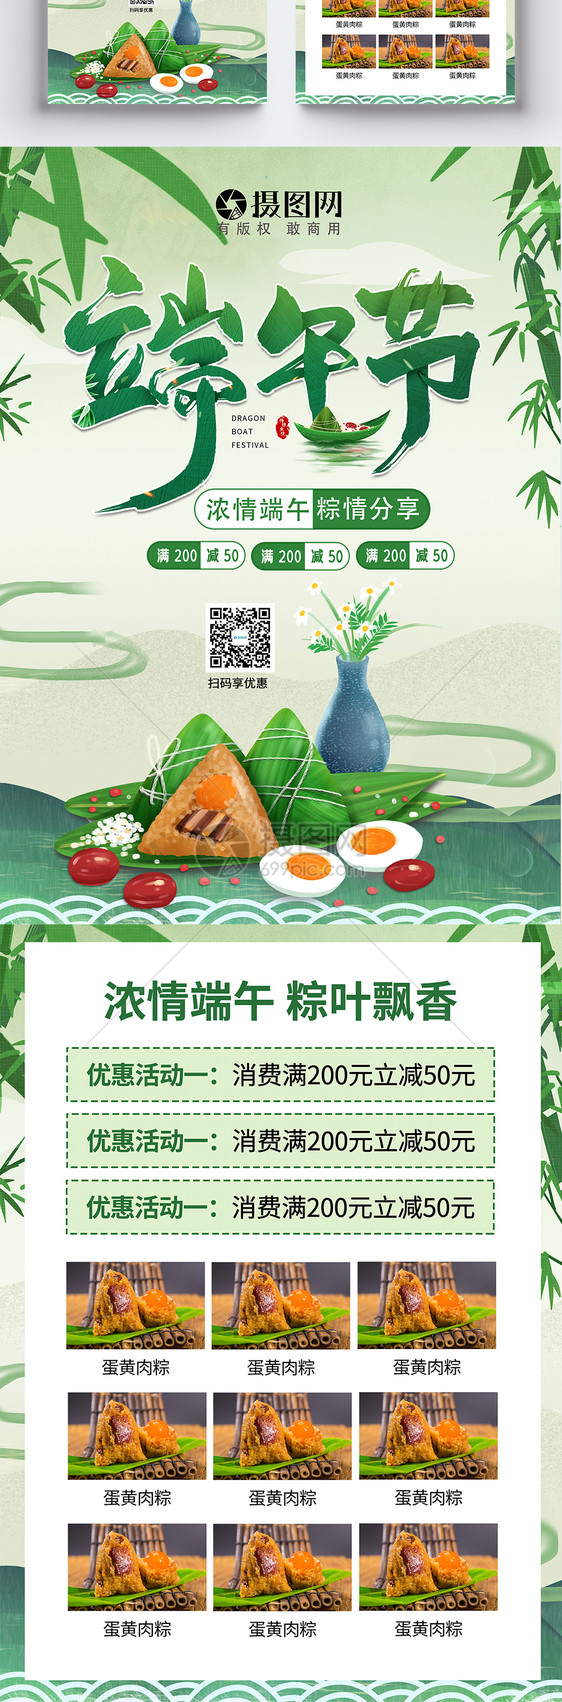 端午节粽子促销宣传单图片